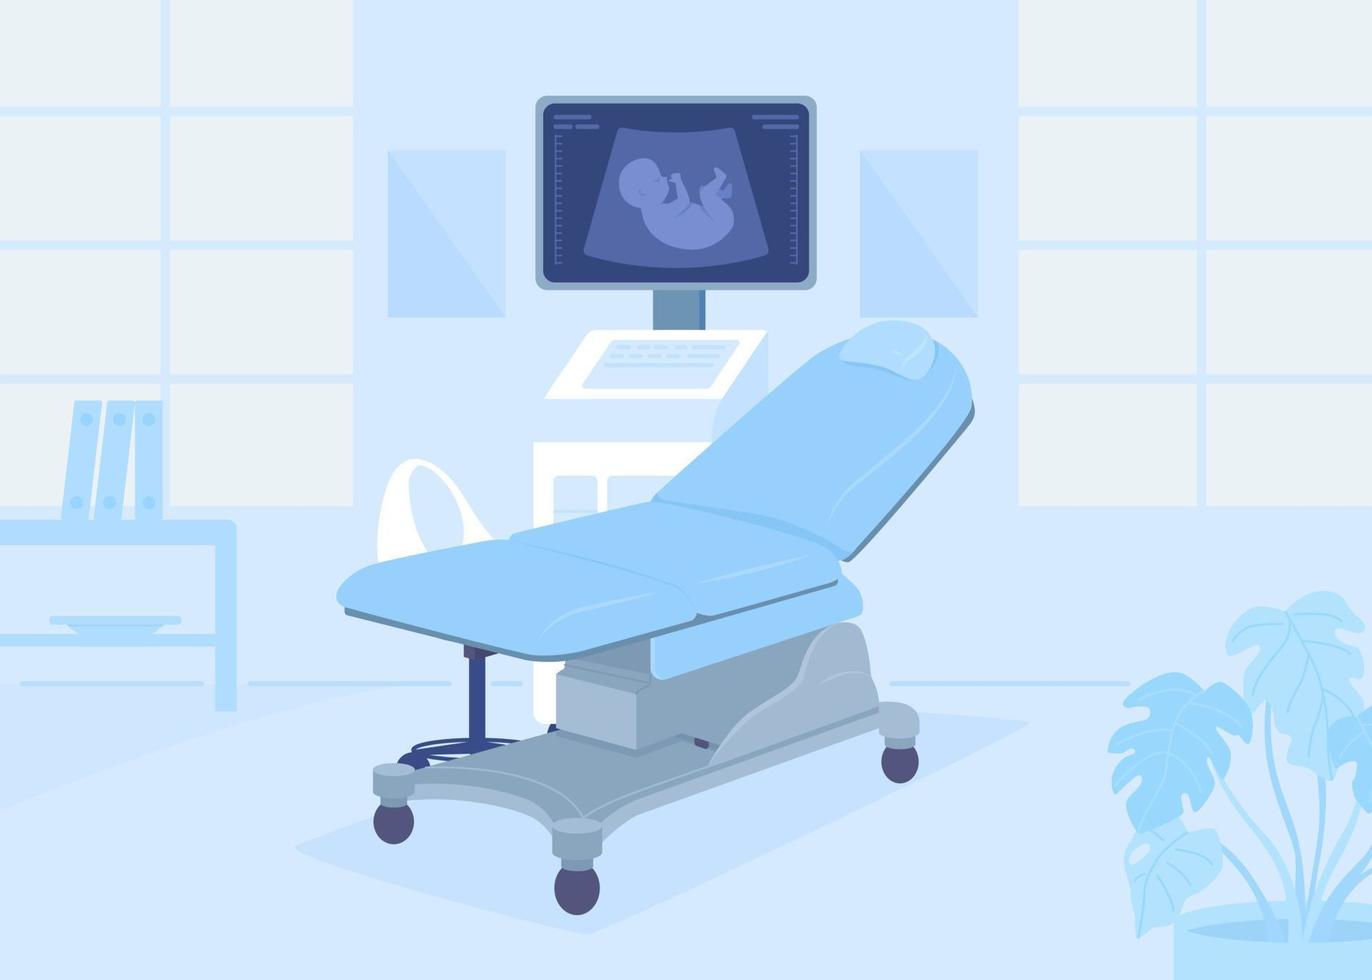 echografie machine voor zwangerschap vlak kleur vector illustratie